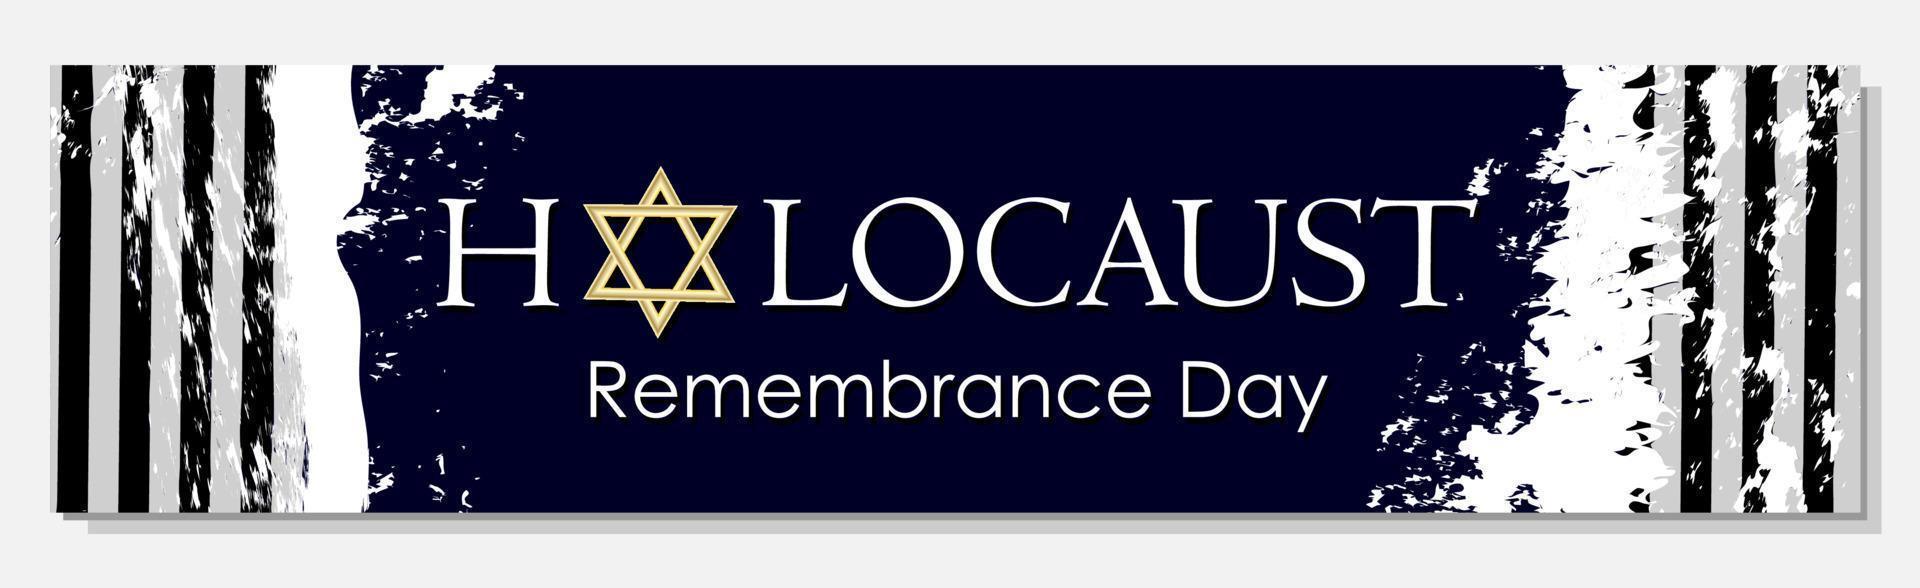 plantilla para el día del recuerdo del holocausto. día internacional de recuerdo de las víctimas. día del recuerdo del holocausto. ilustración vectorial vector